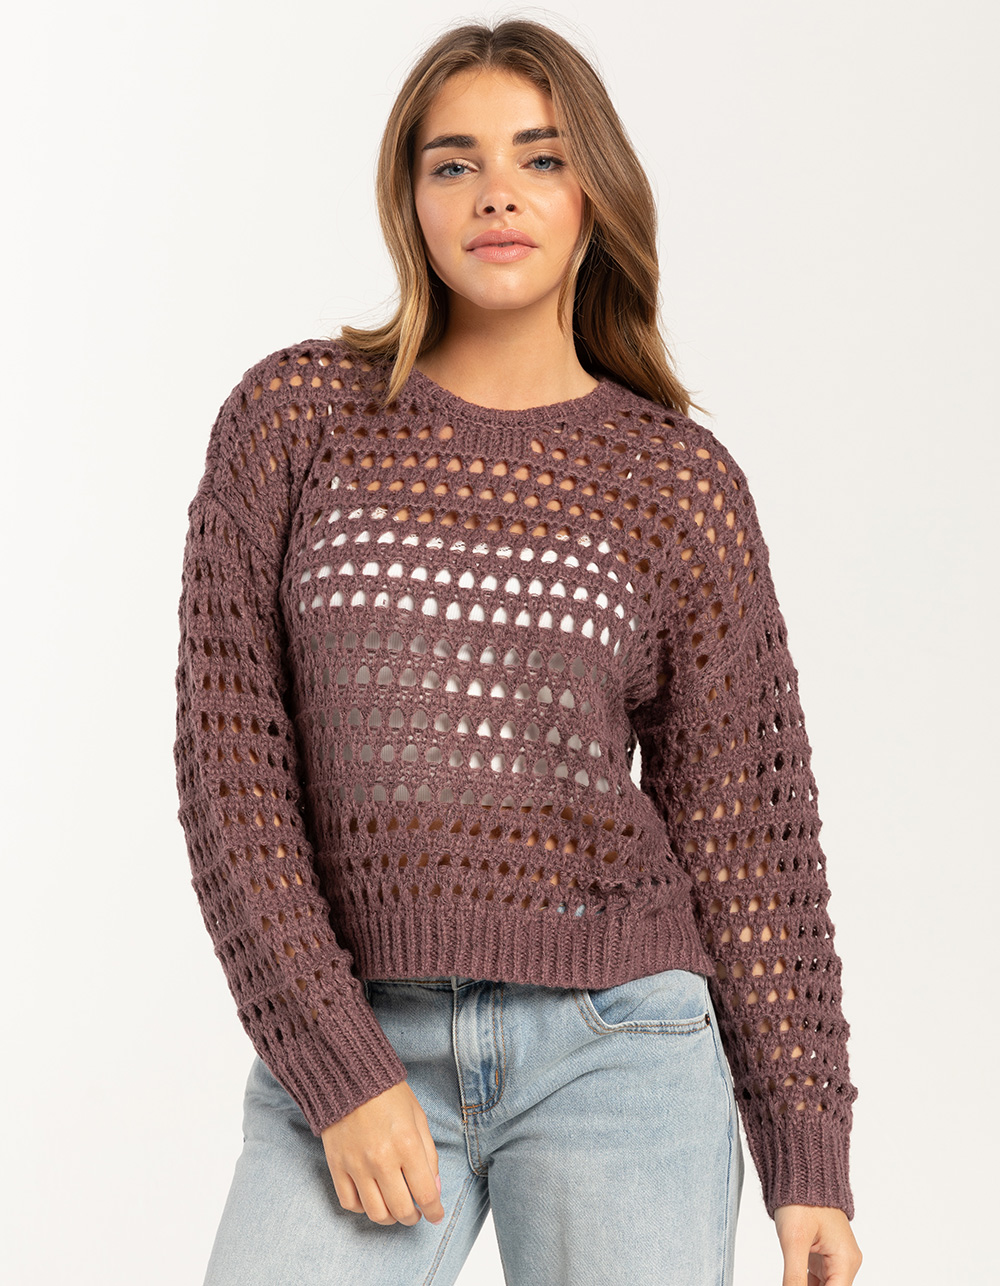 FULL TILT Swirl Girls Pullover Sweater